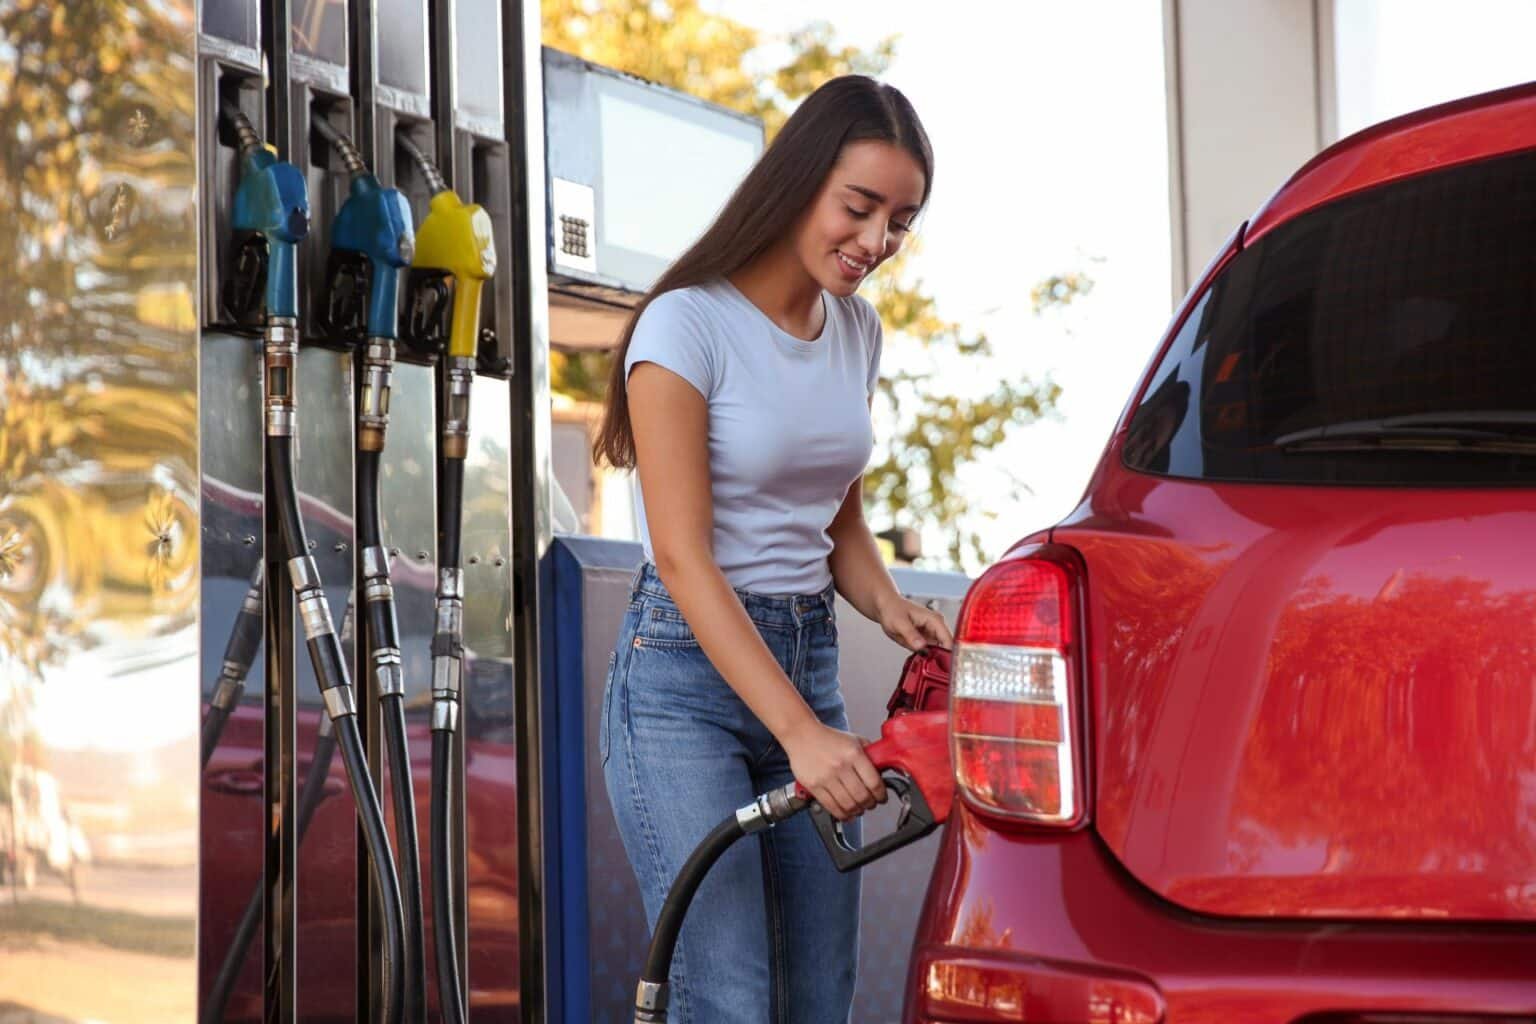 Elektro vs. Benzin: Zulassungszahlen im Fokus